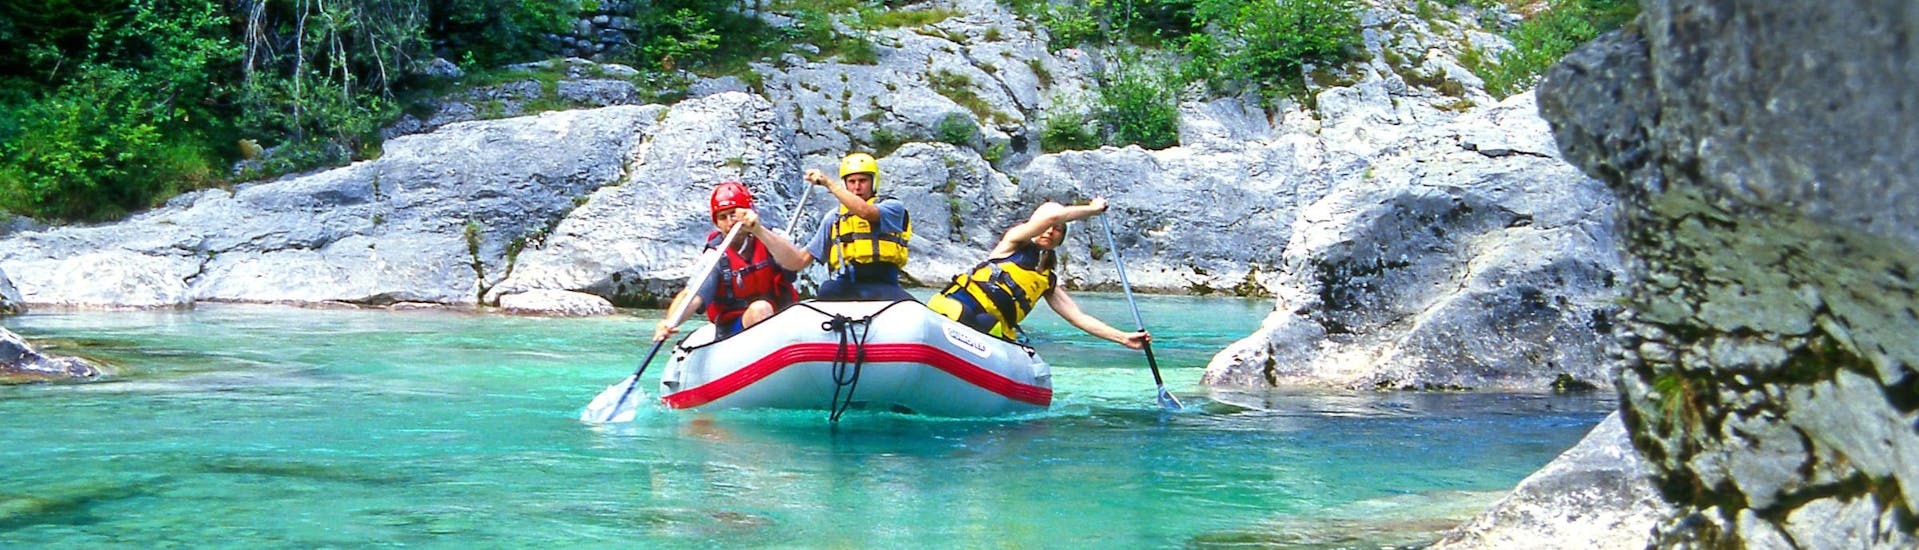 Soča: Een groep jongeren geniet van een wildwateravontuur in een van de hotspots voor rafting en canyoning.